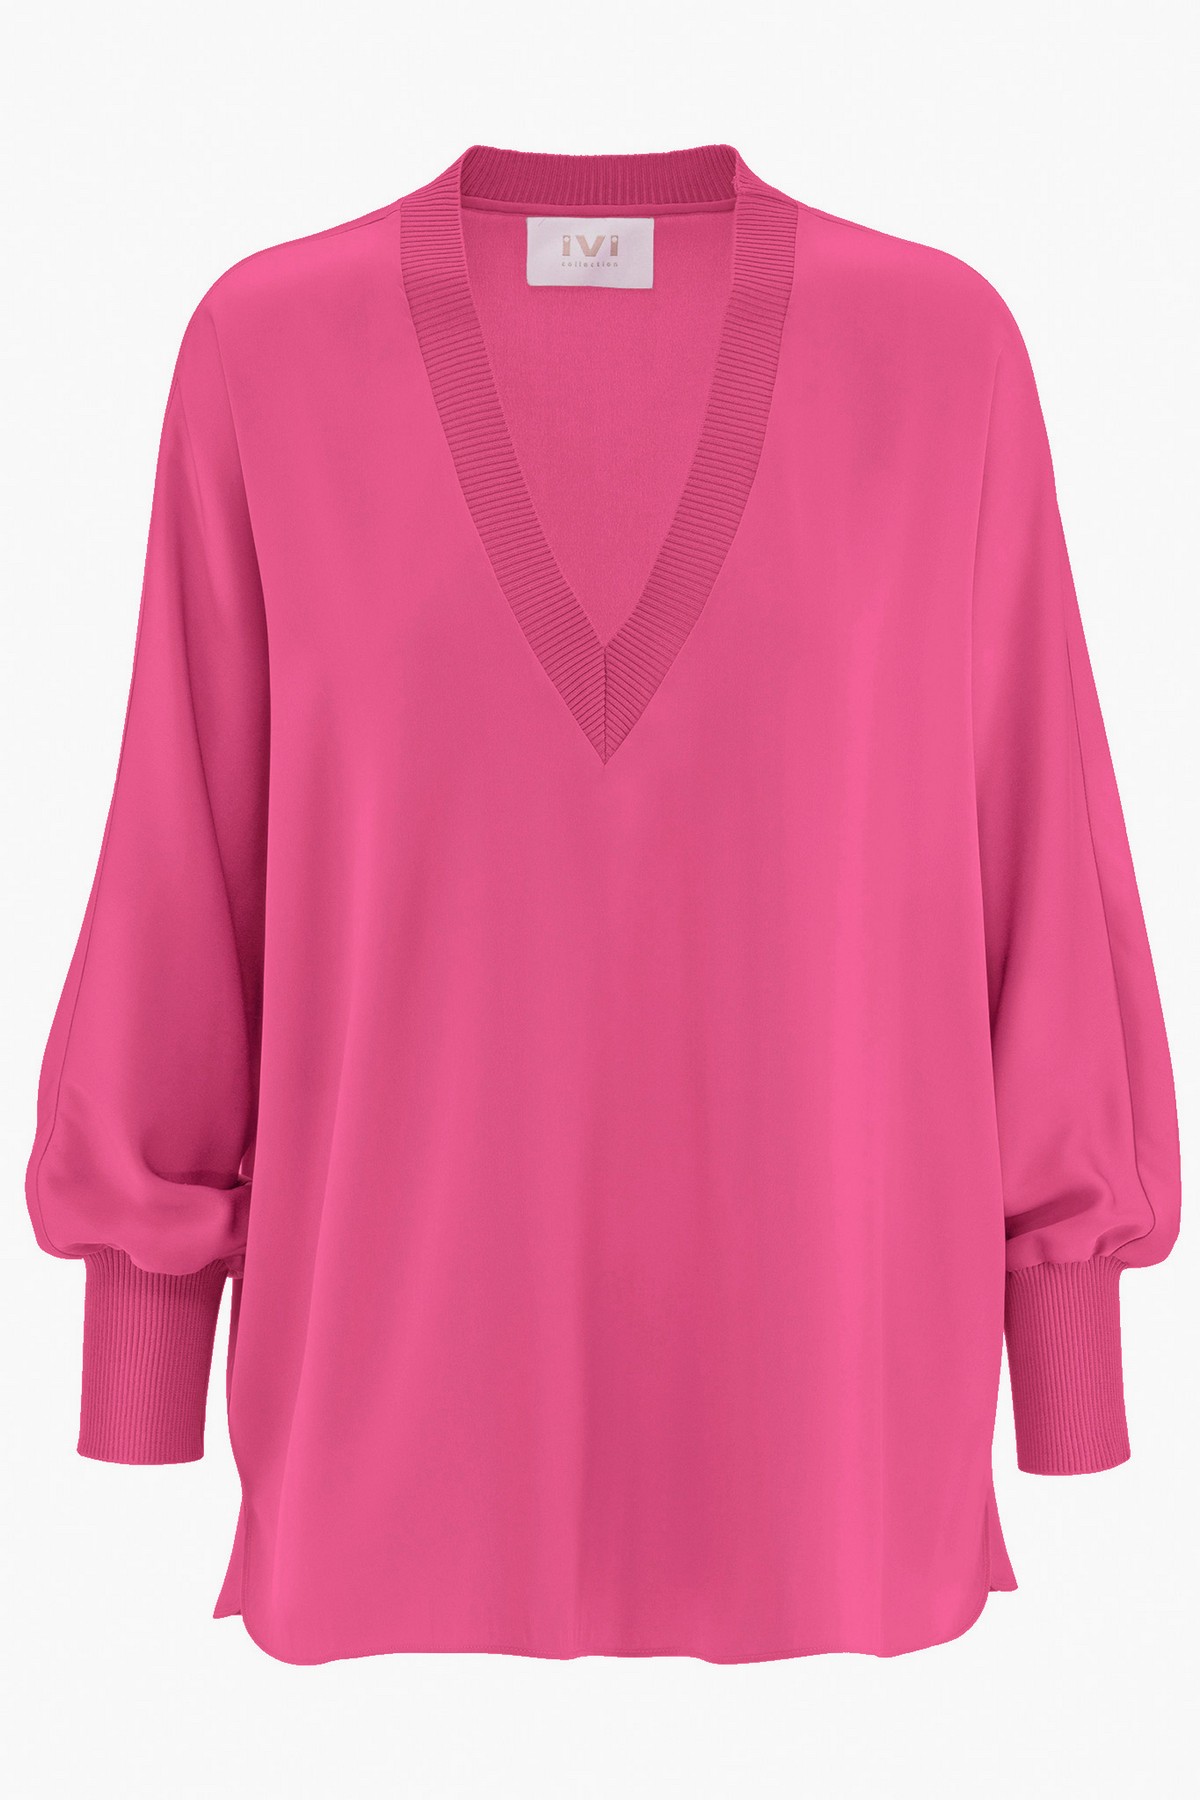 Shirtbloes zijde uni in de kleur pink van het merk Ivi Collection